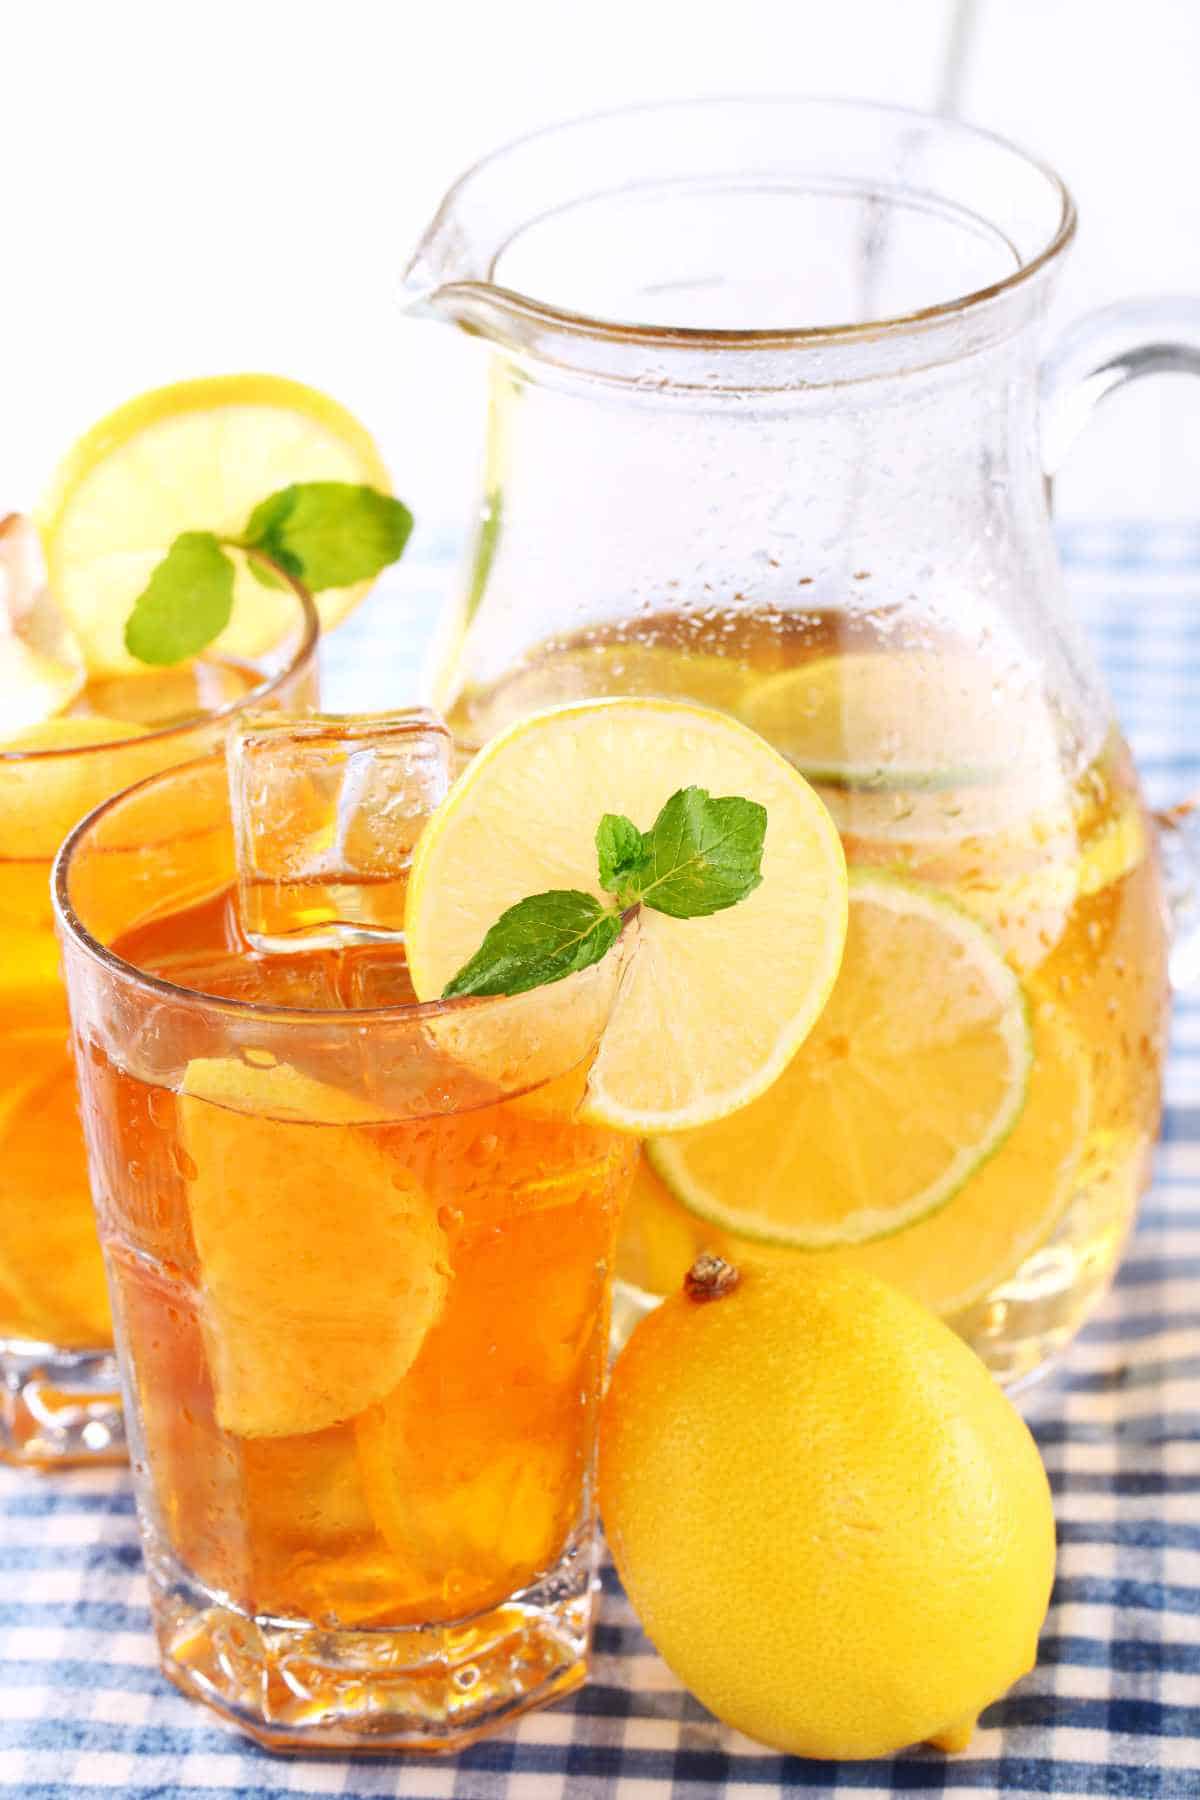 lemon slices on glasses of summer lemonade and iced tea.